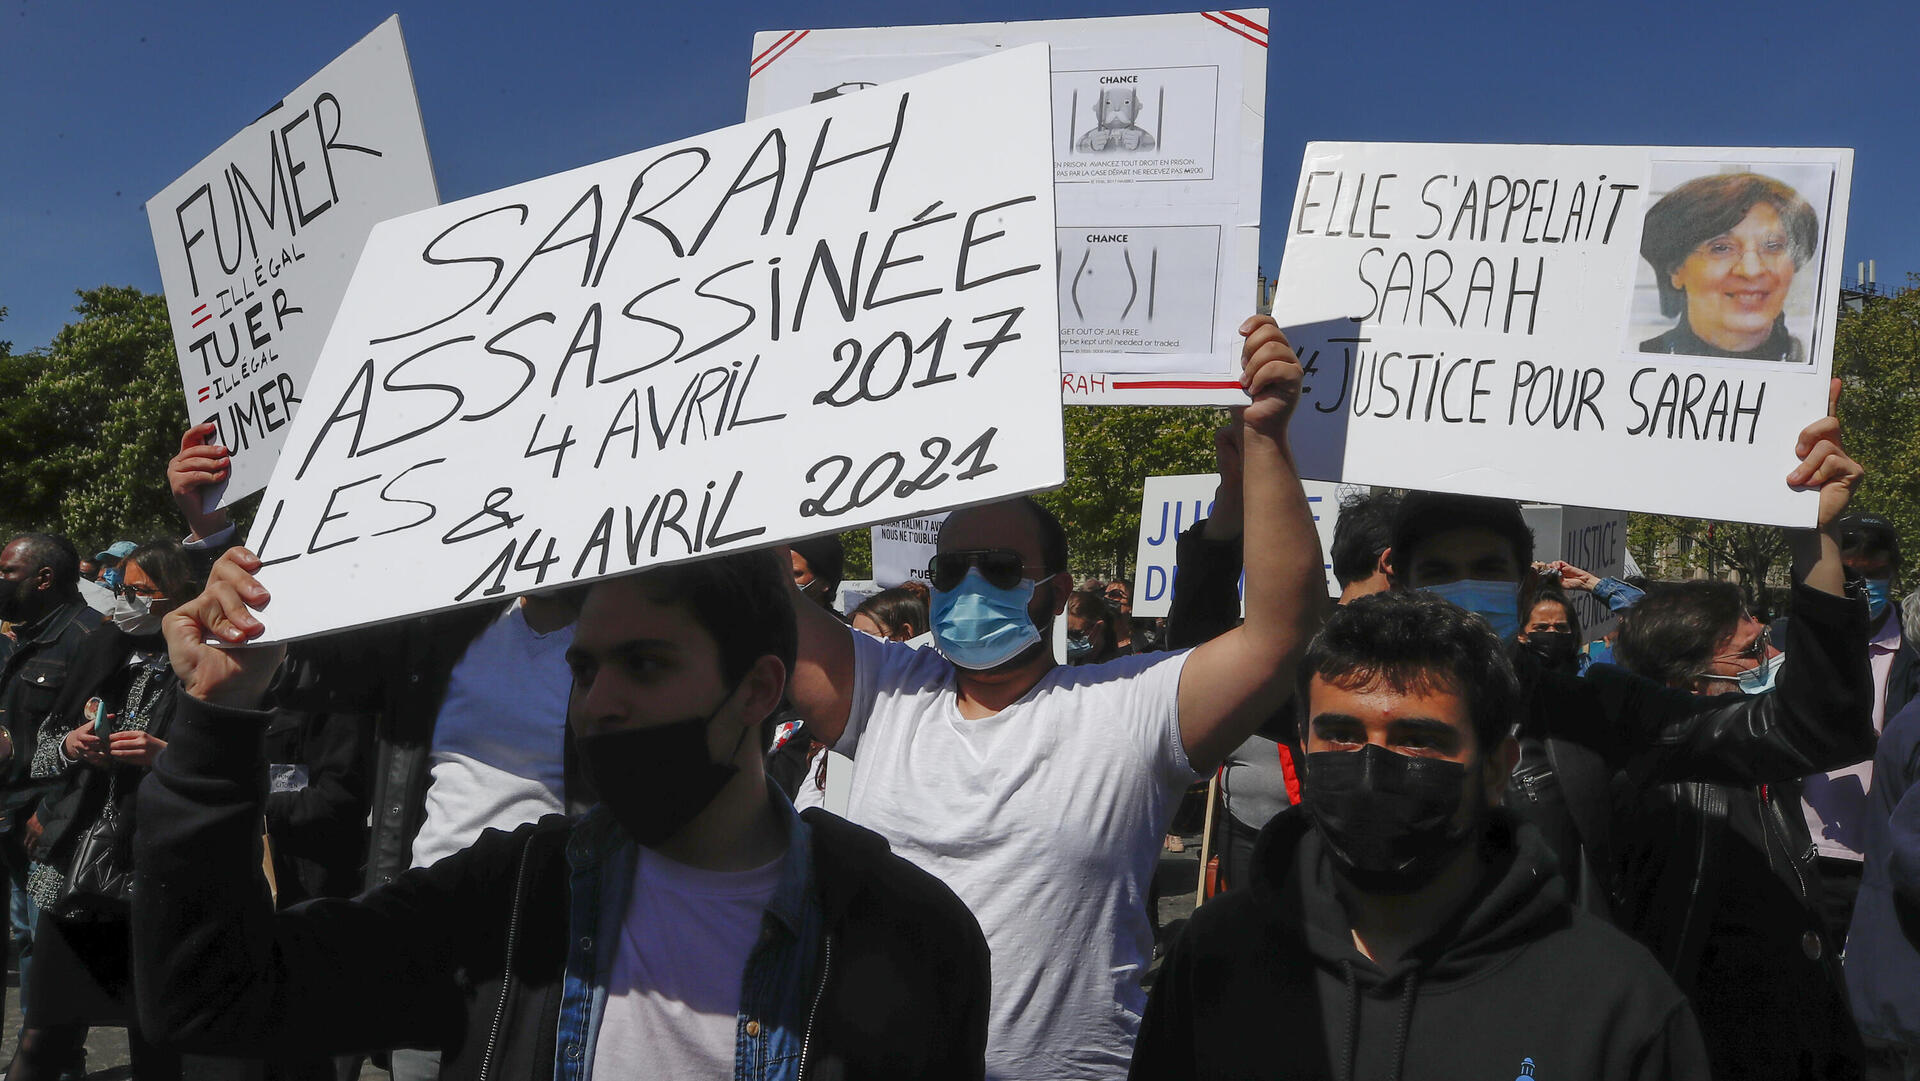 הפגנה נגד אנטישמיות בצרפת